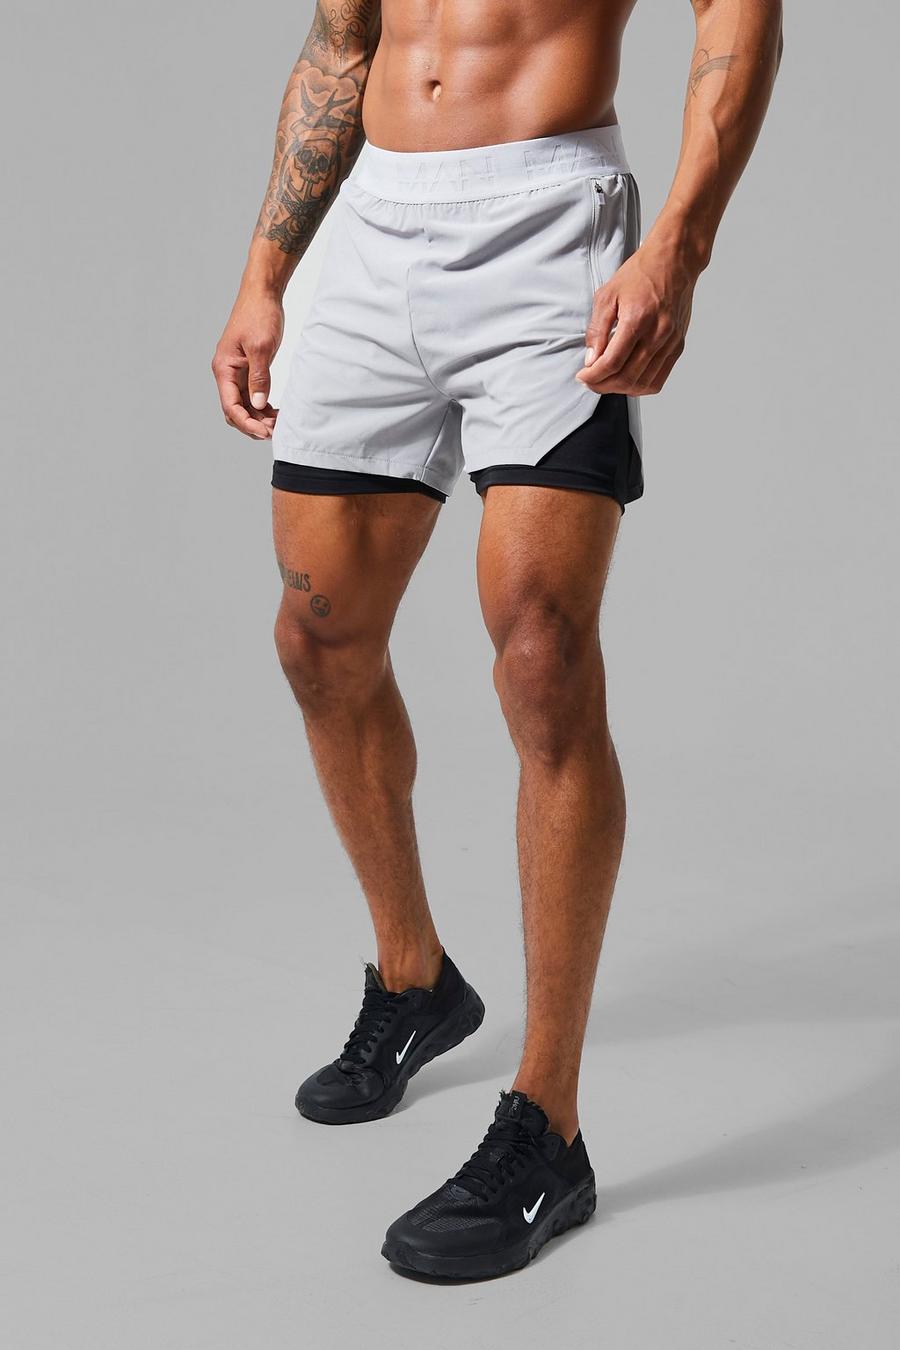 Pantaloncini 2 in 1 Man Active con spacco super ampio, Grey grigio